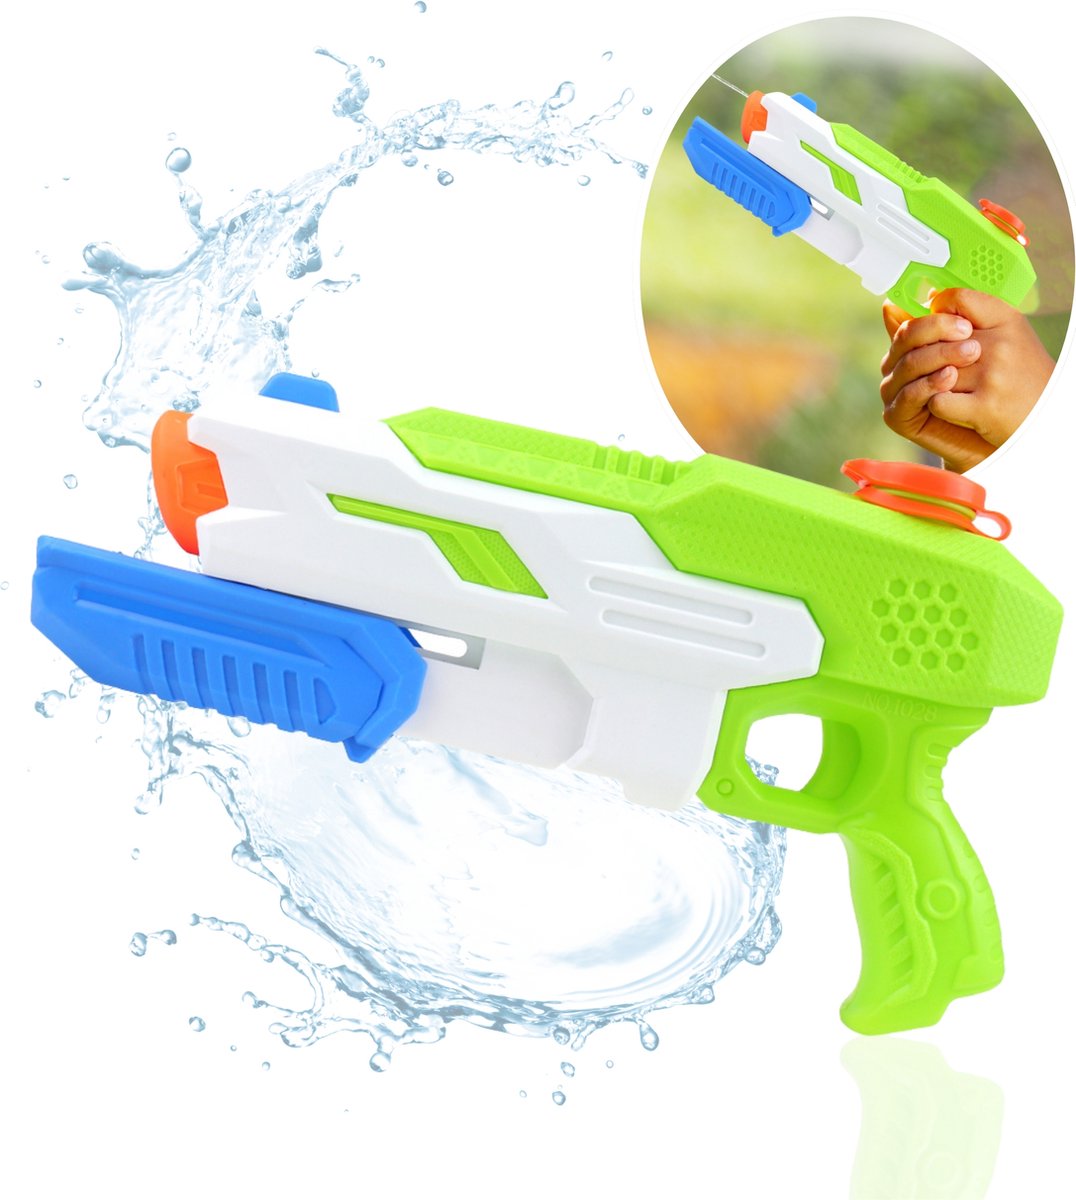 CaptainXL Waterpistool - Super Soaker - Waterspeelgoed - Zwembad Speelgoed - Speelgoed voor Kinderen - 530ML - Tot 9 Meter Ver - Binnen 10 Seconden Gevuld - Veilig voor Kinderen - Groen